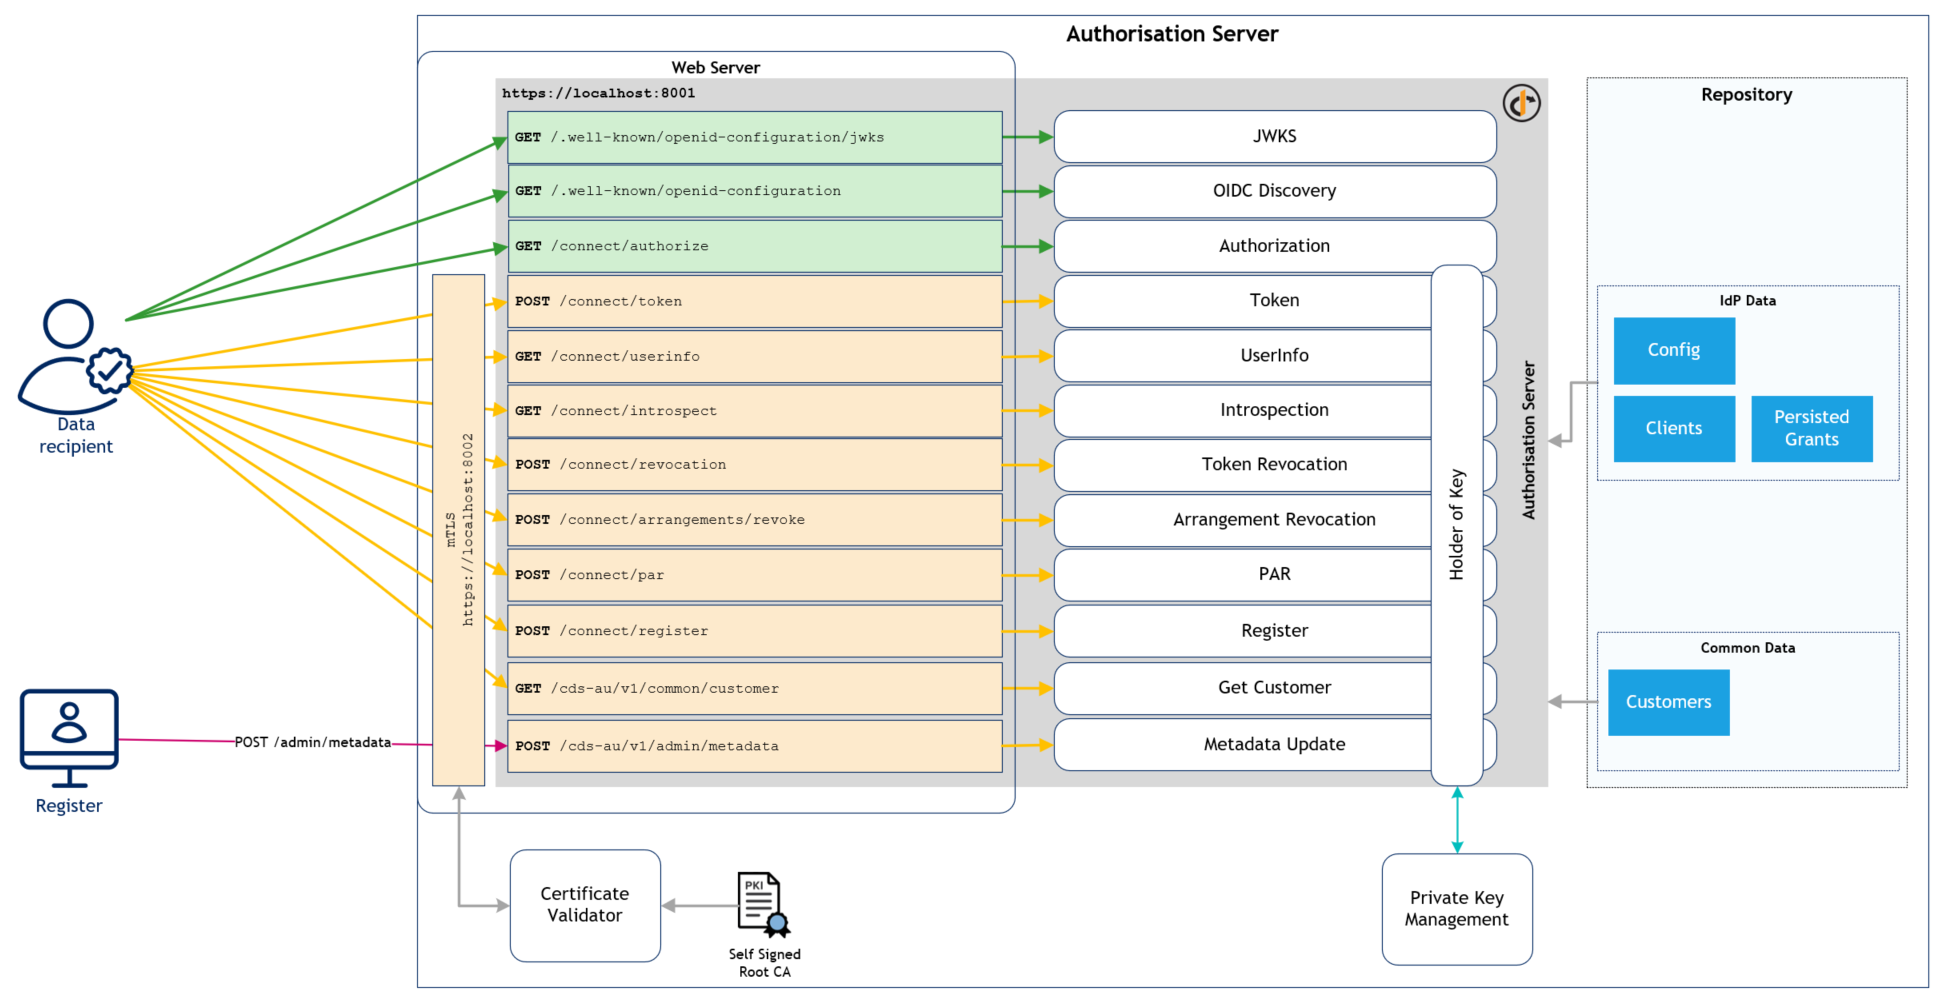 Authorisation Server - Architecture